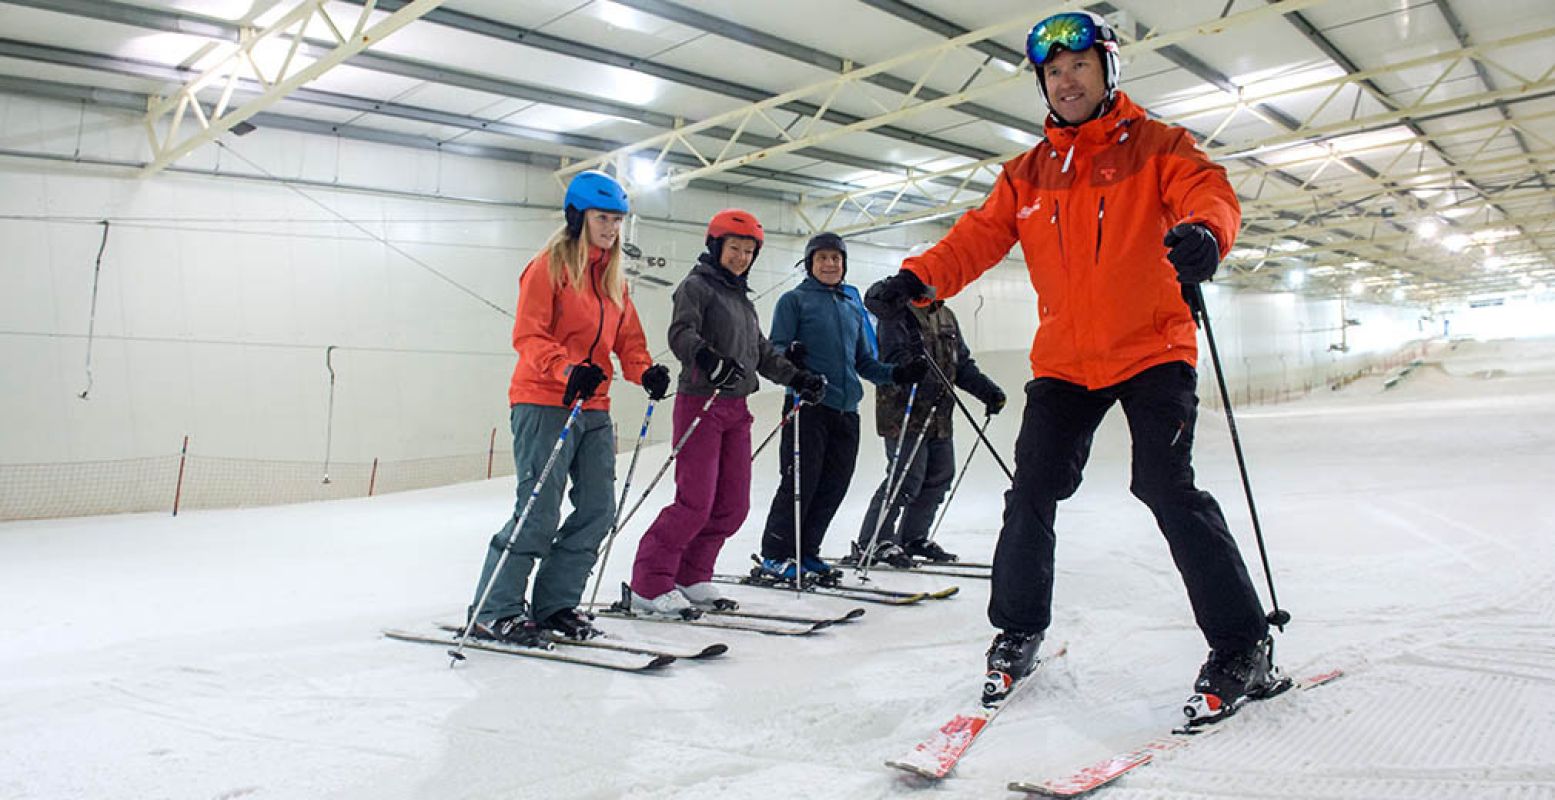 Kom zelf skiën of een skiles volgen in een indoor skihal. Foto: SnowWorld Terneuzen.